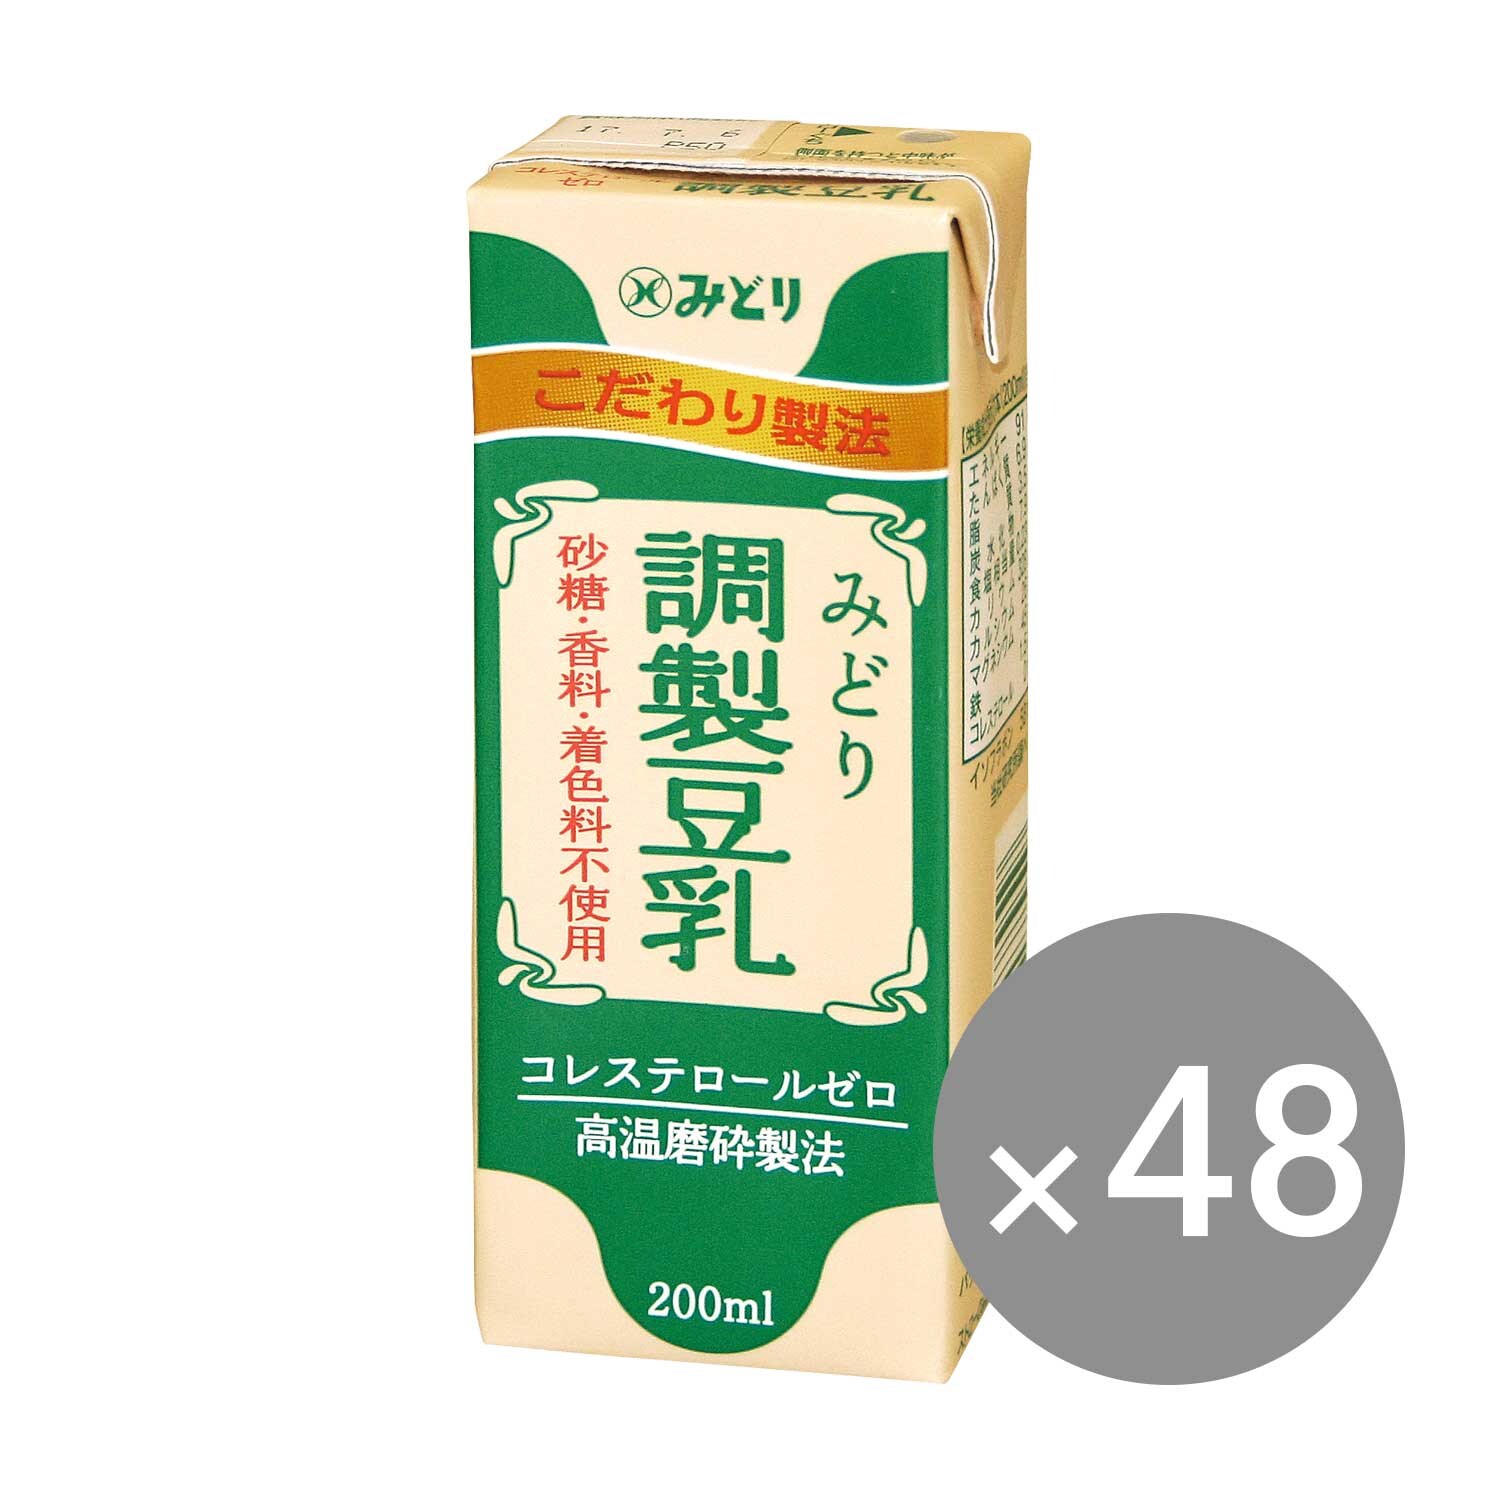 【九州乳業】みどり 豆乳 調製豆乳(200ml紙パック)48本/72本